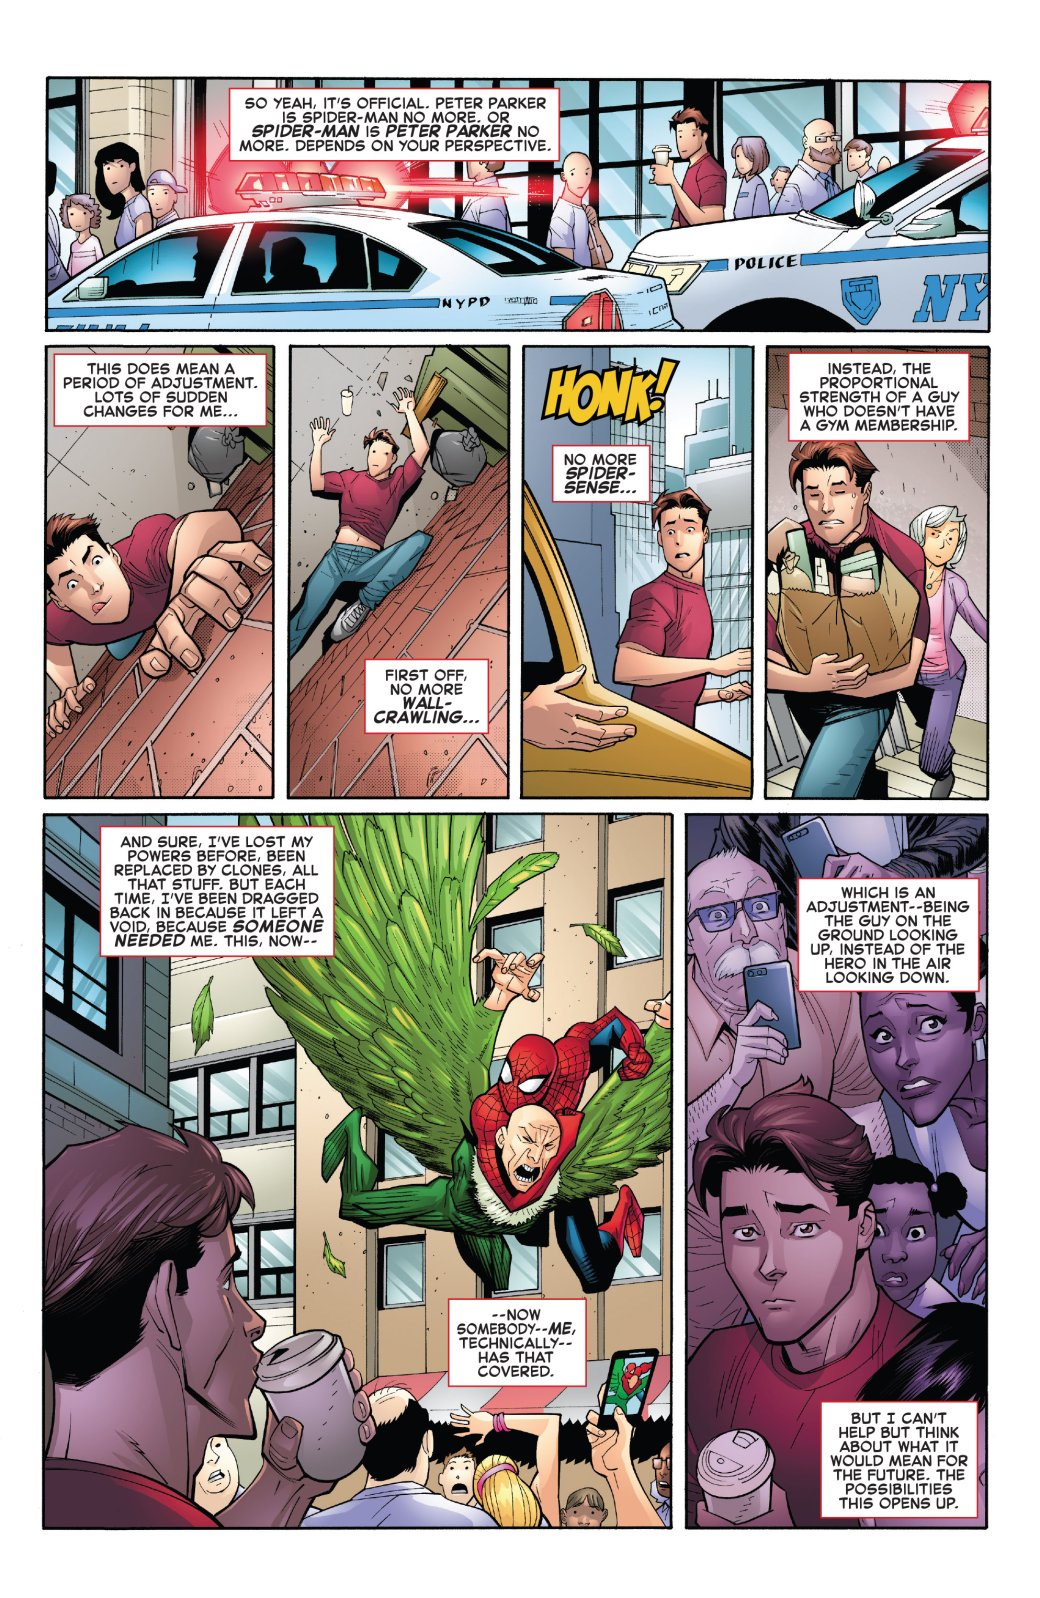 Галерея Объяснено: как Питер Паркер и Человек-паук могут раздельно существовать на страницах нового комикса? - 3 фото